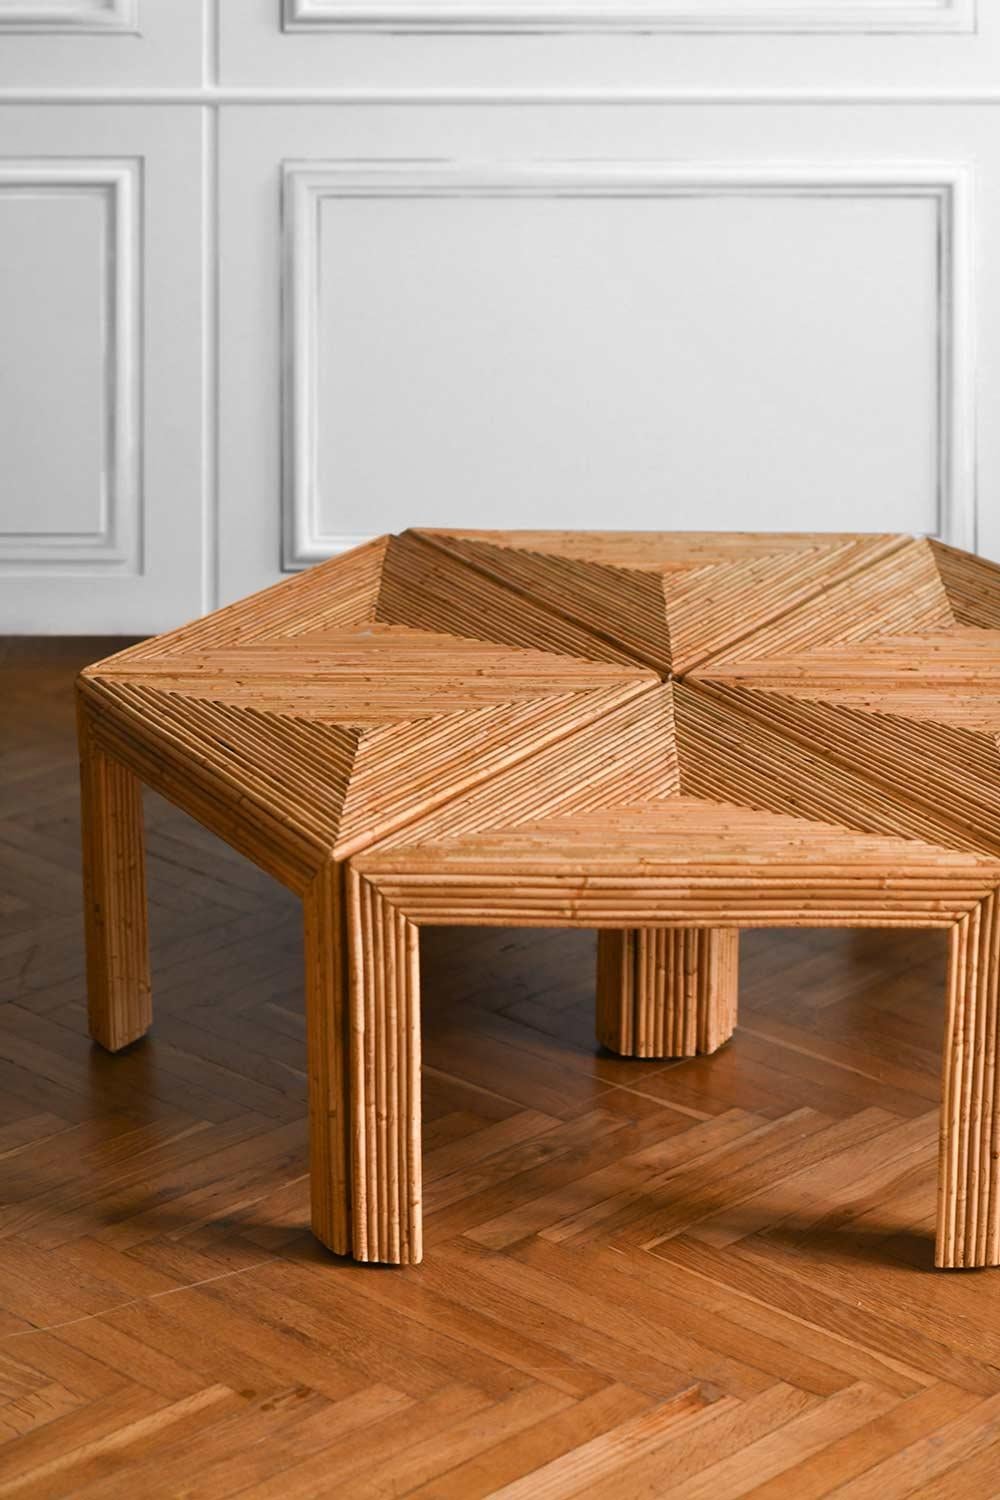 Ensemble de tables modulaires en rotin, prod. Vivai Del Sud, Italie 1970
Dimensions du module unique : 60 L x 40 H x 53 D cm